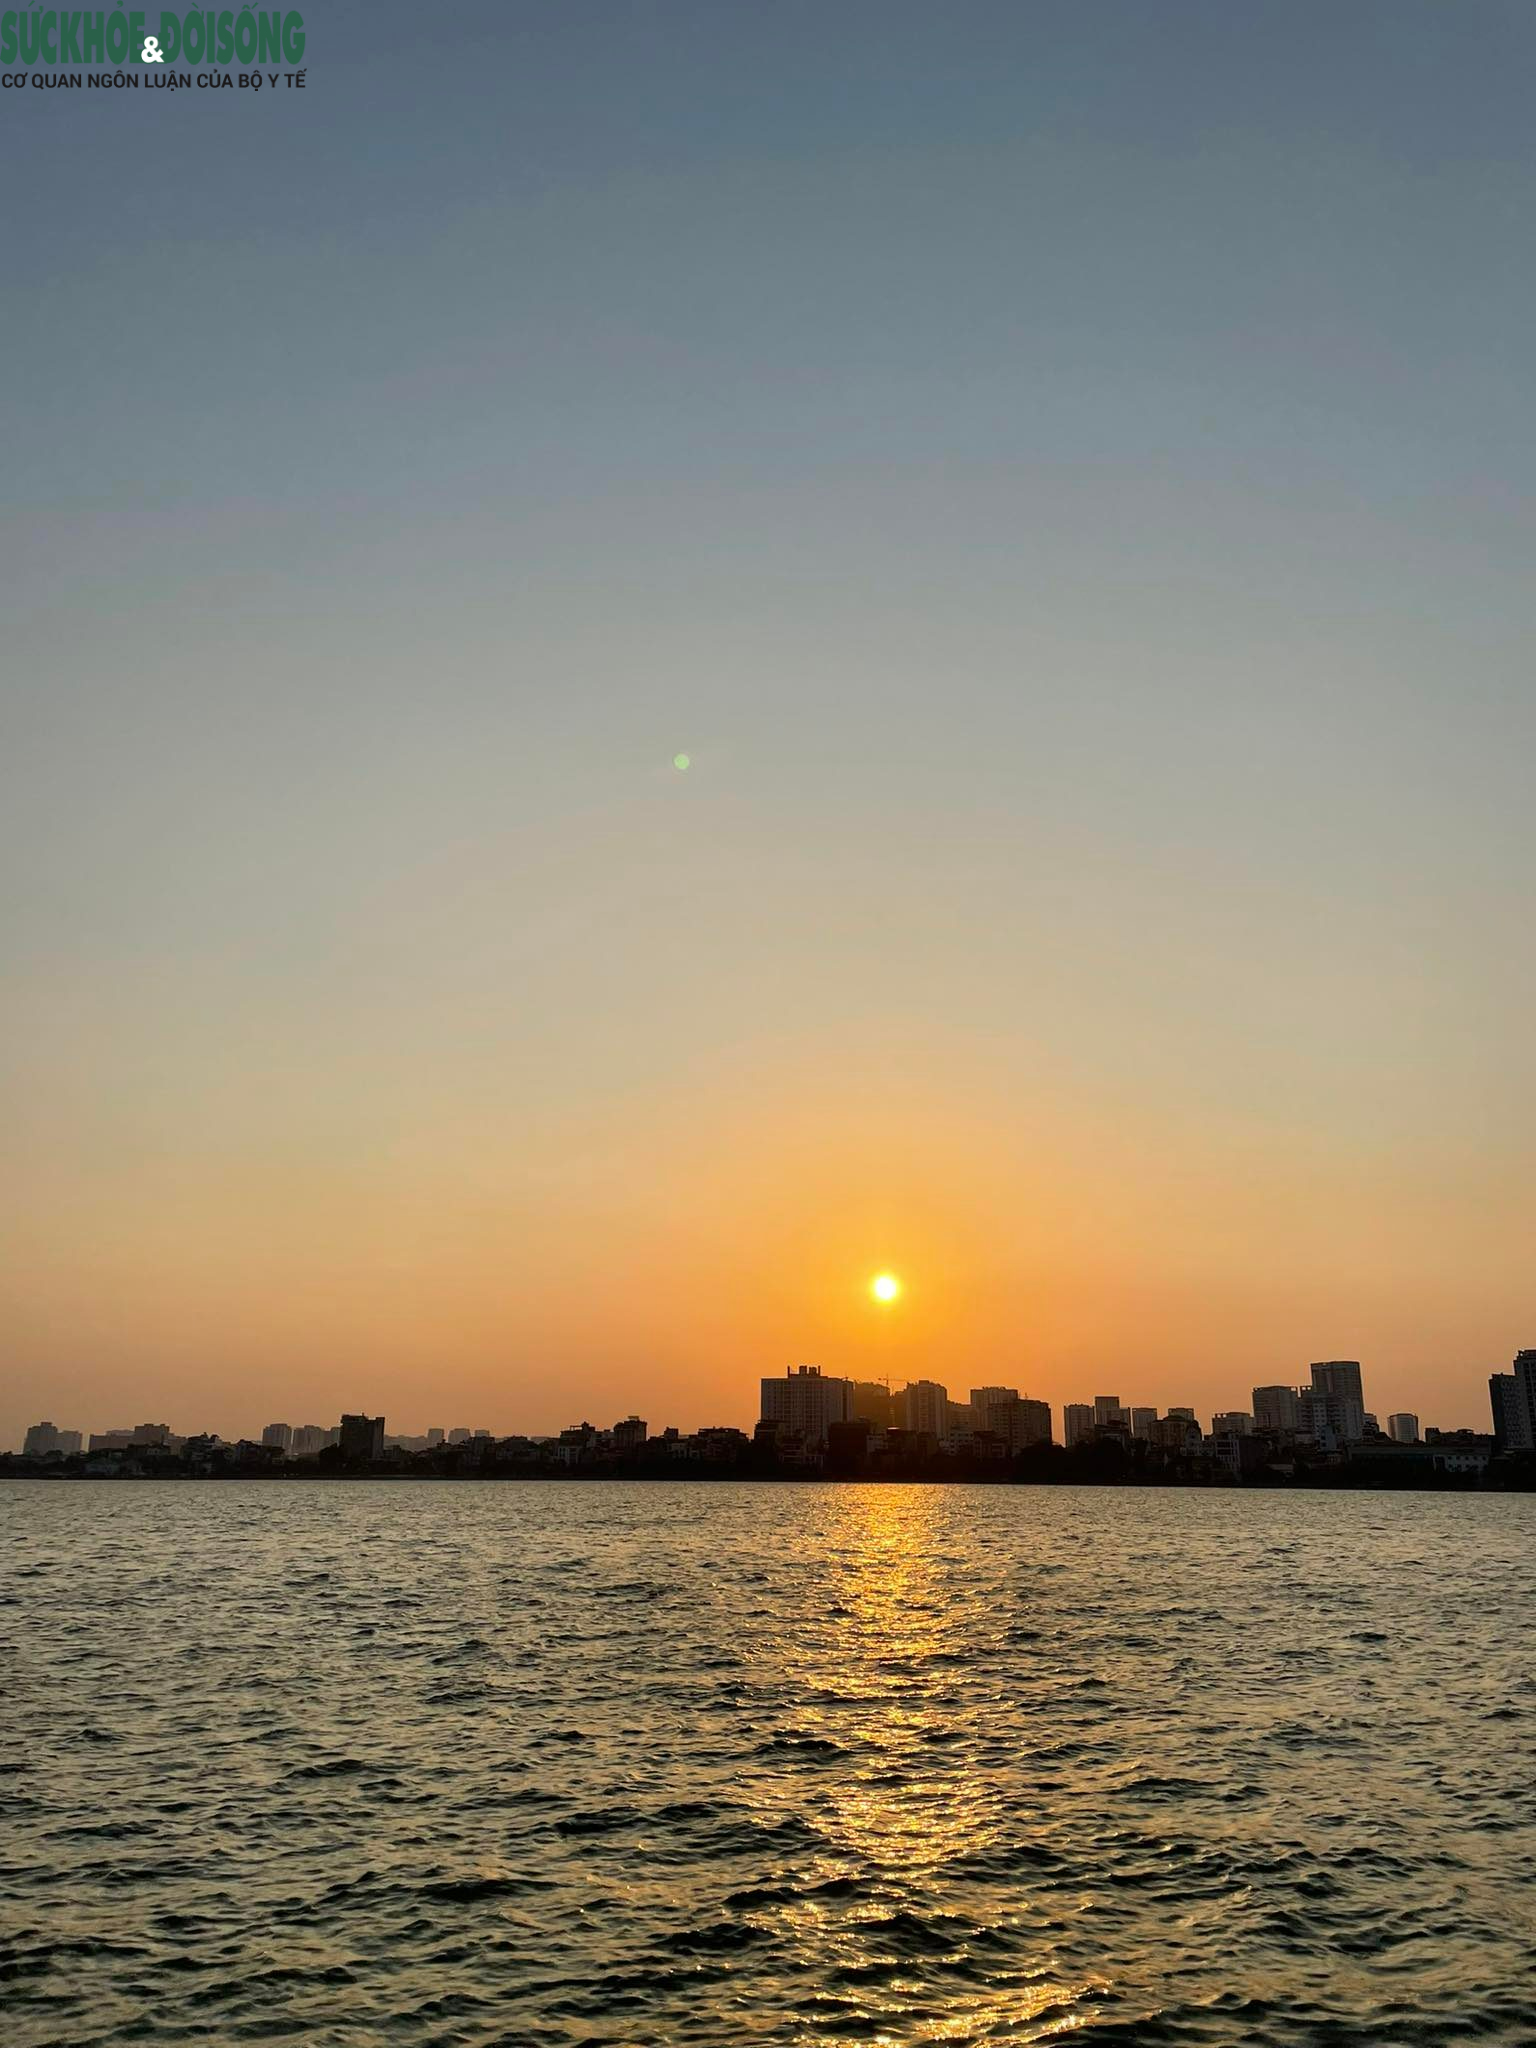 Hồ Tây: Hồ Tây là một điểm đến thú vị của Hà Nội, với phong cảnh tuyệt đẹp của hồ nước xanh và những tòa nhà cao tầng rực rỡ ánh sáng vào ban đêm. Hãy xem hình ảnh liên quan đến Hồ Tây để cảm nhận sự thanh bình của không gian này.